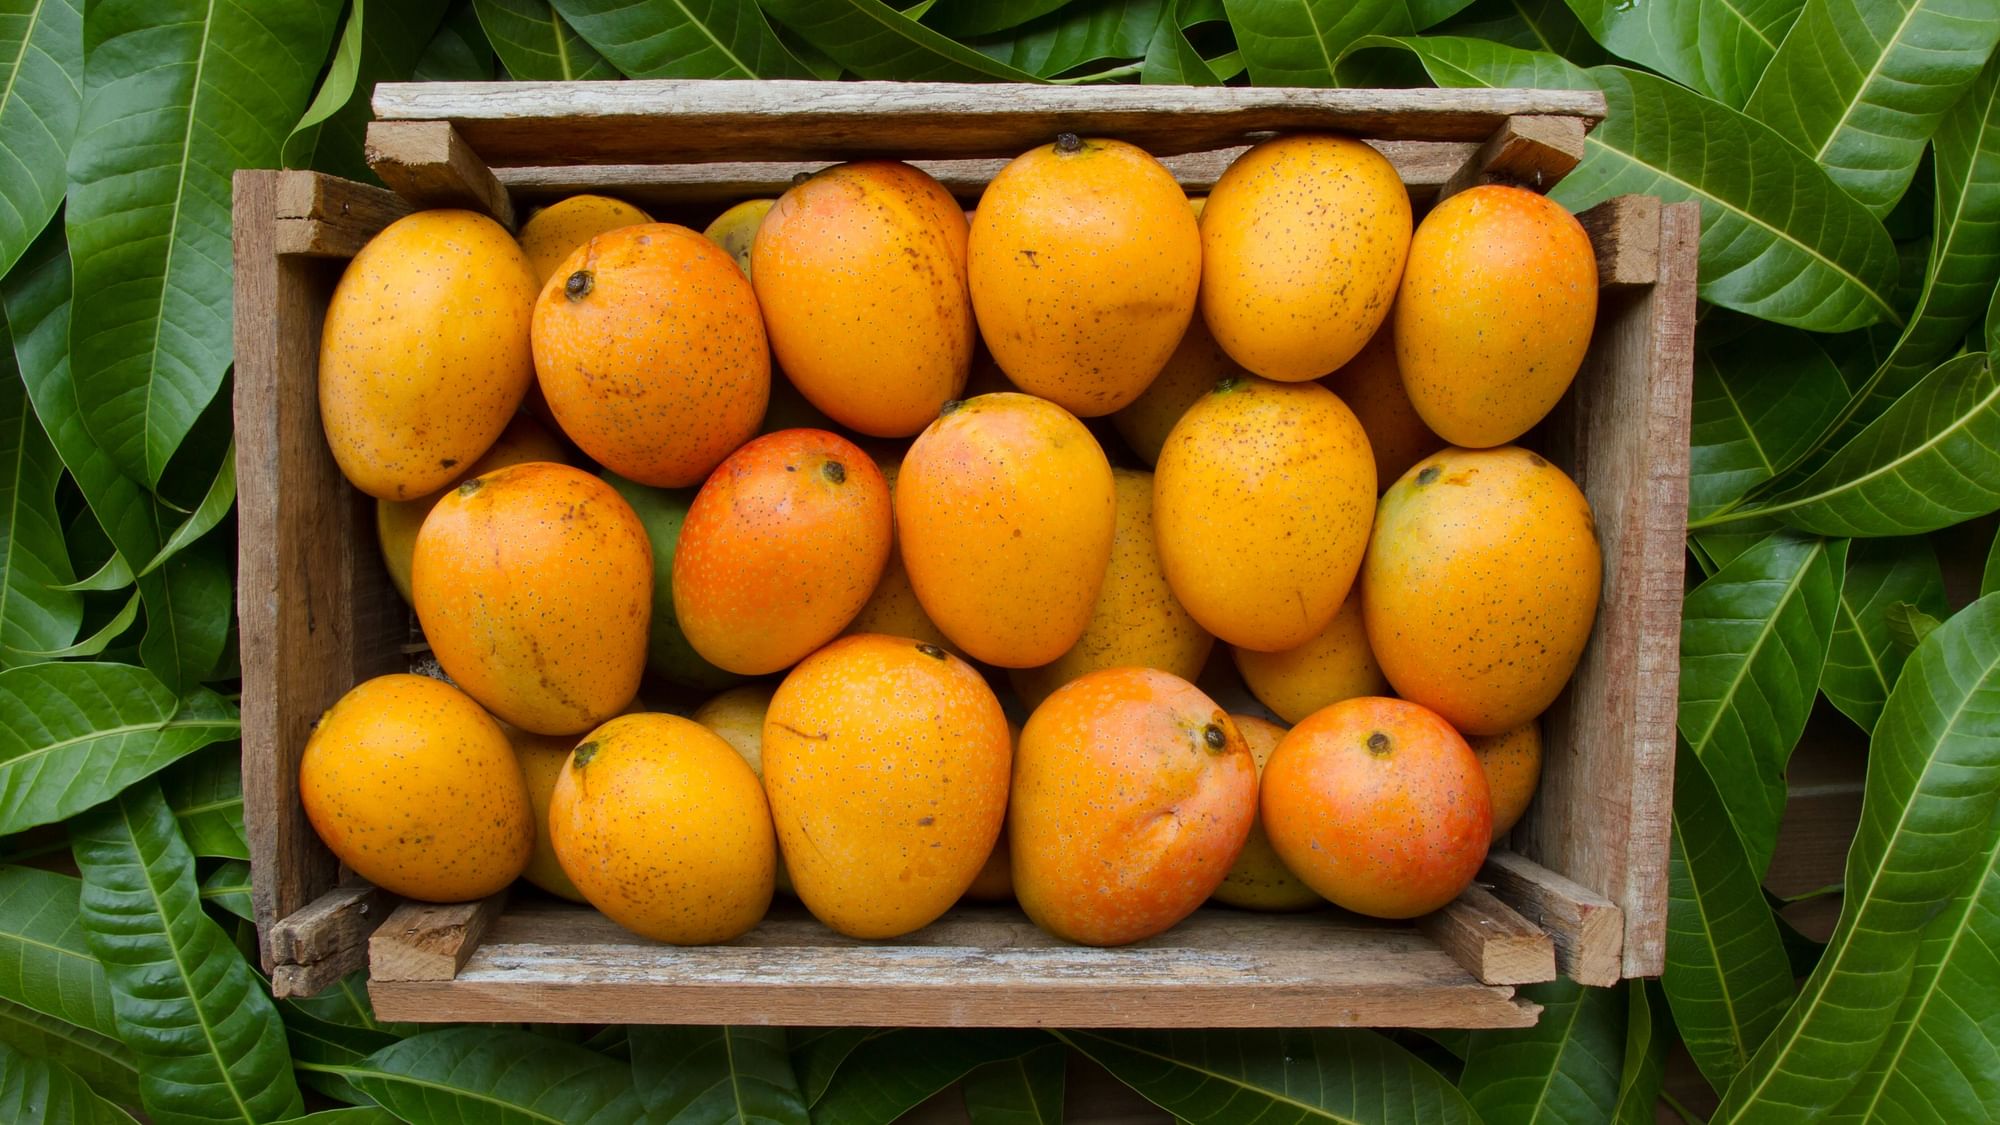 <div class="paragraphs"><p>Mango recipes: Mangalore, Kerala, Benares mango recipes.&nbsp;</p></div>